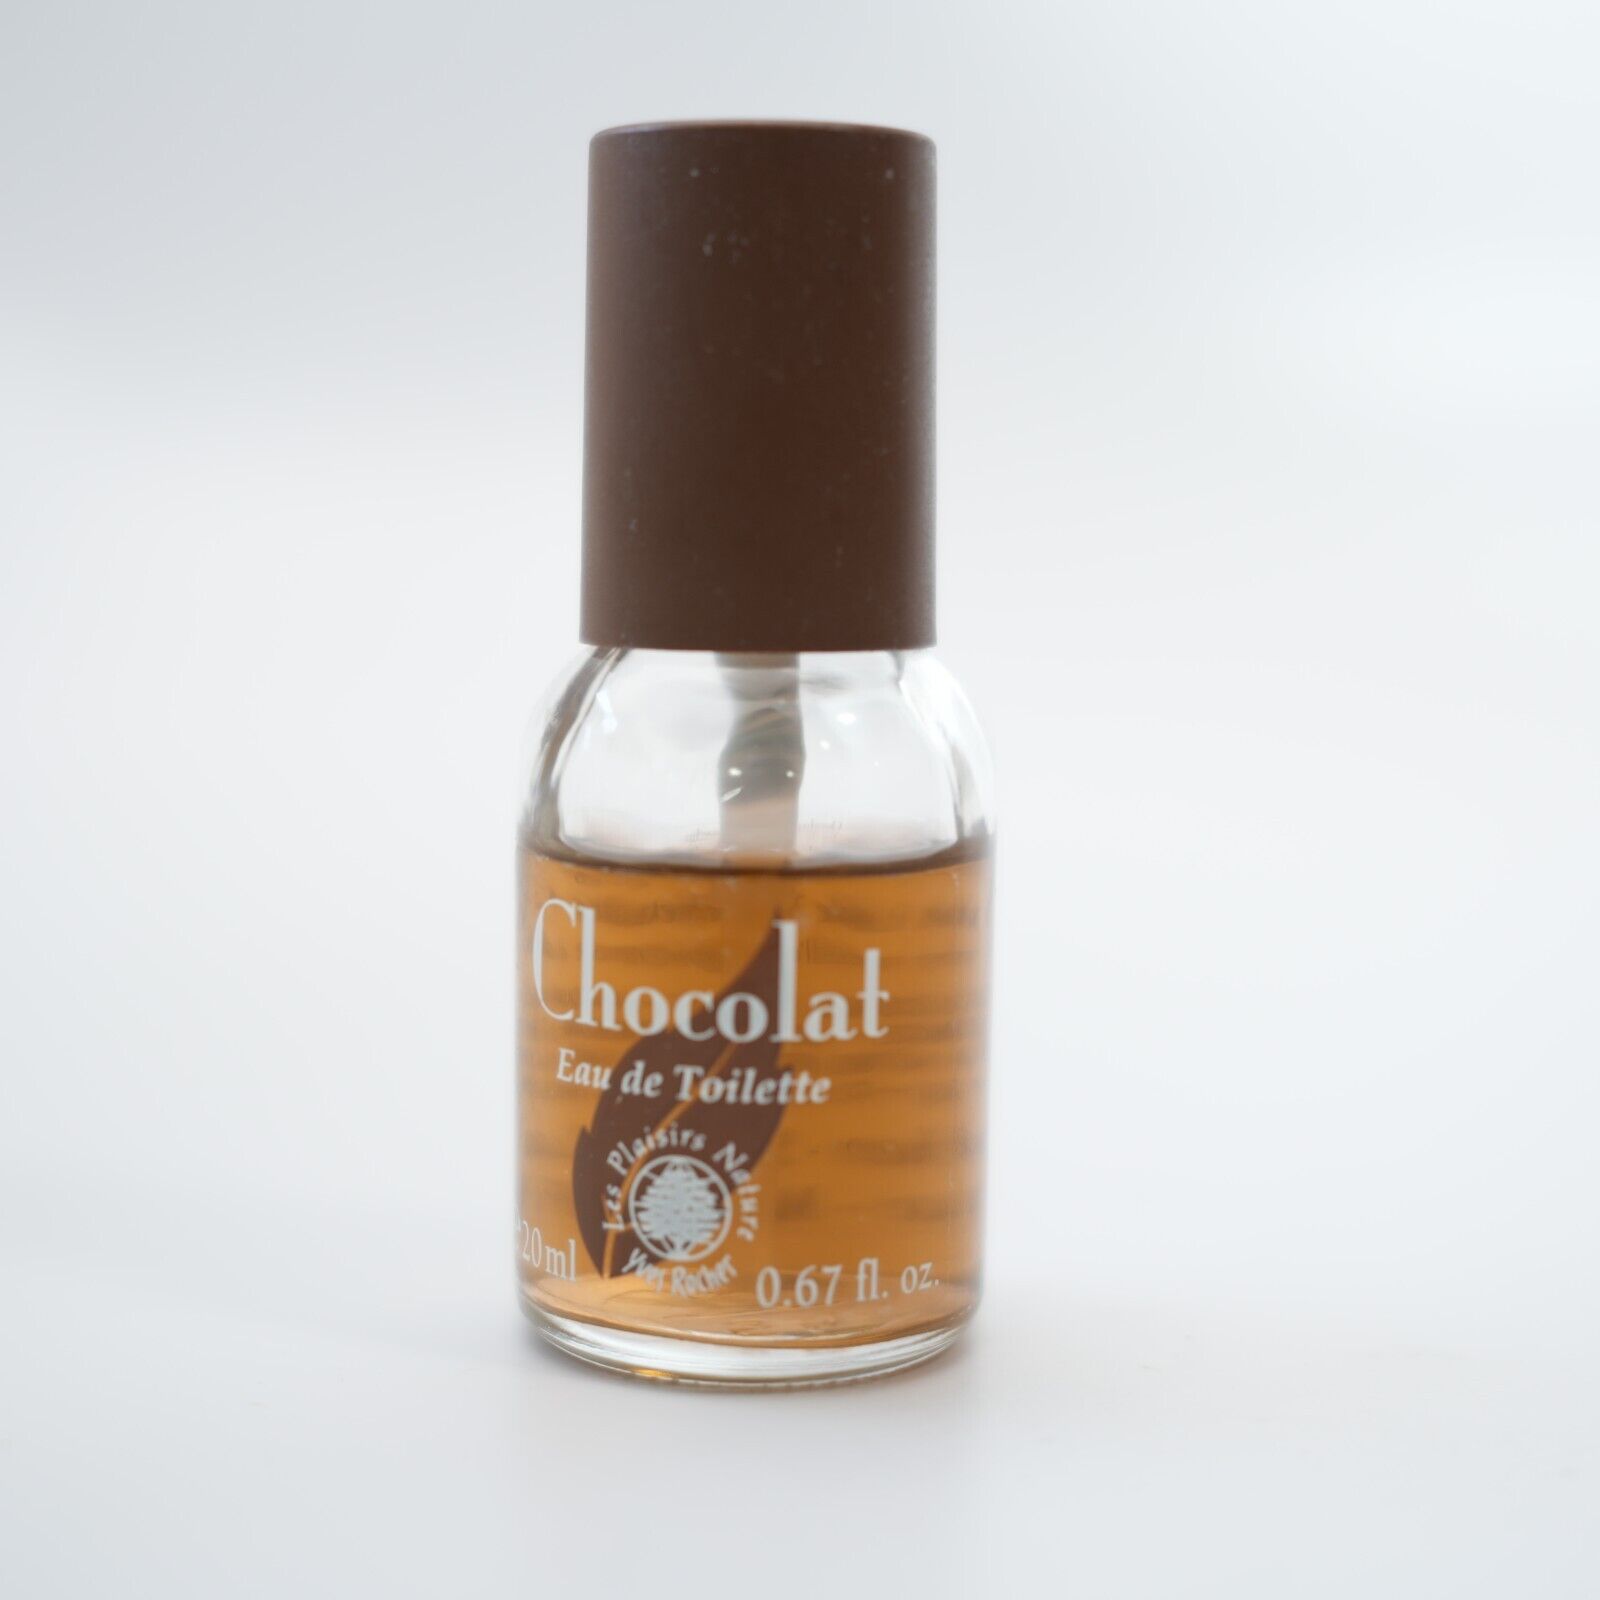 Yves Rocher Perfume Vintage Chocolat Eau de Toilette Les Plaisirs Nature 20mL